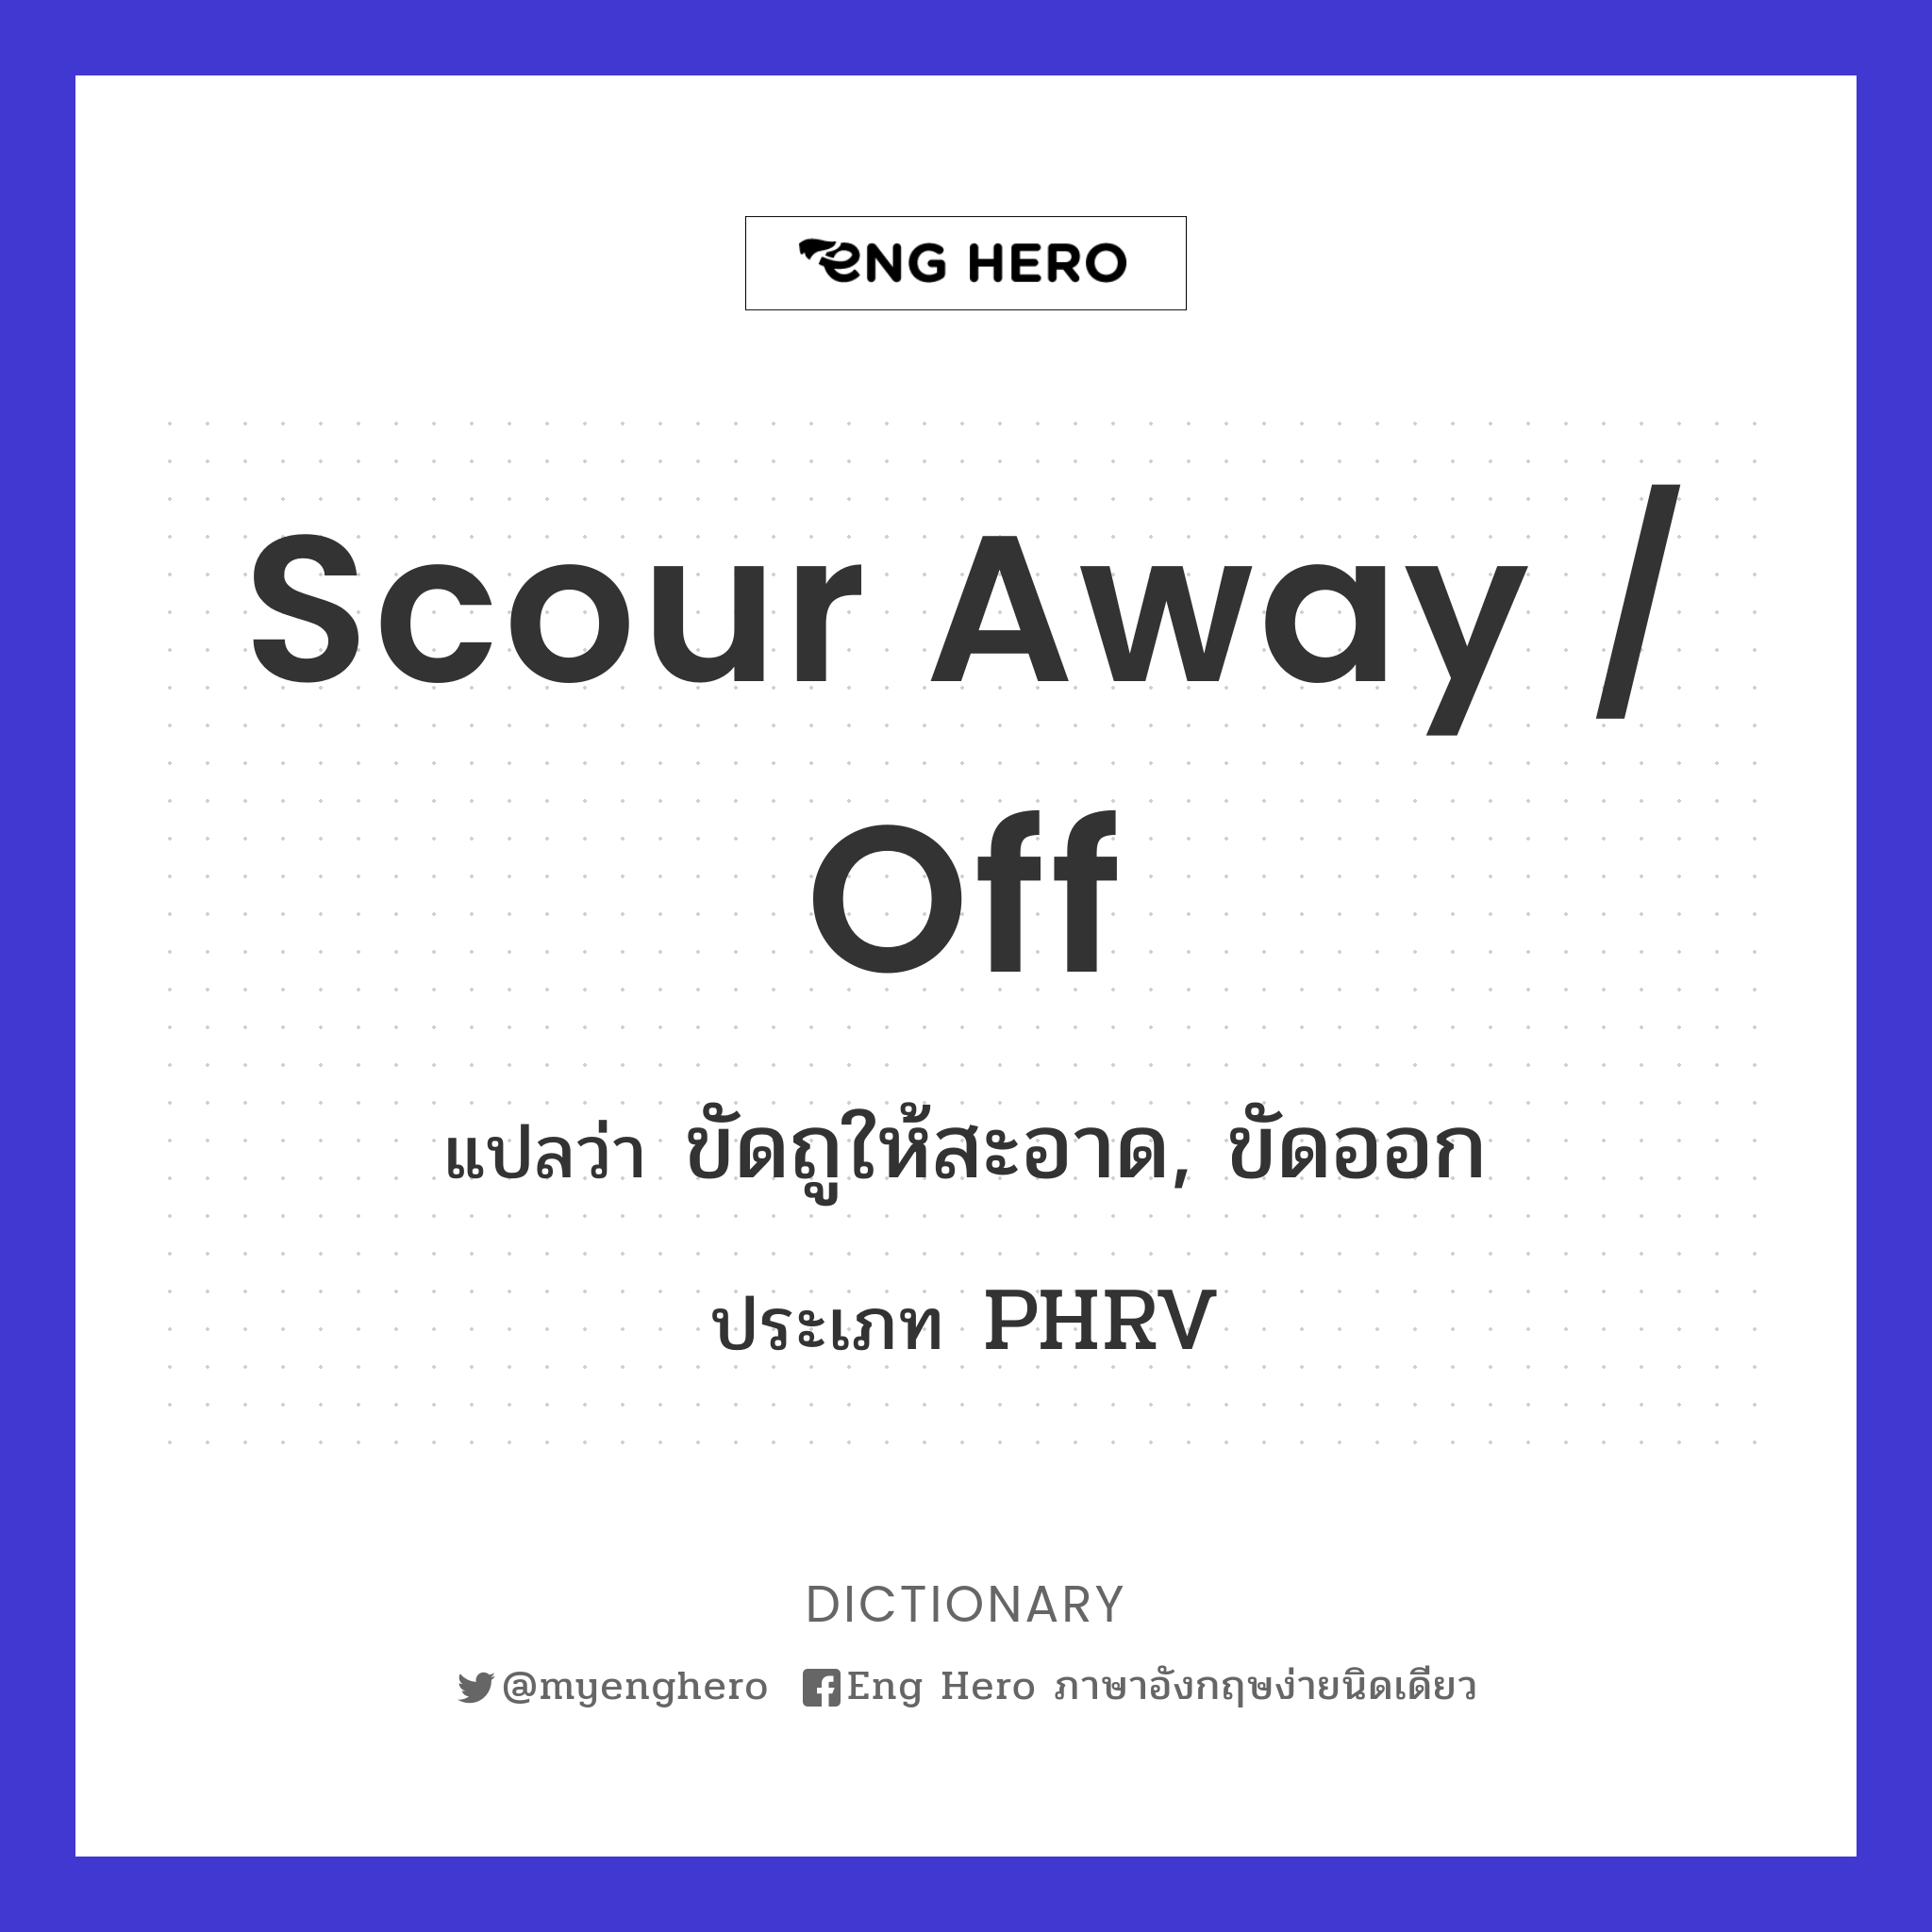 scour away / off